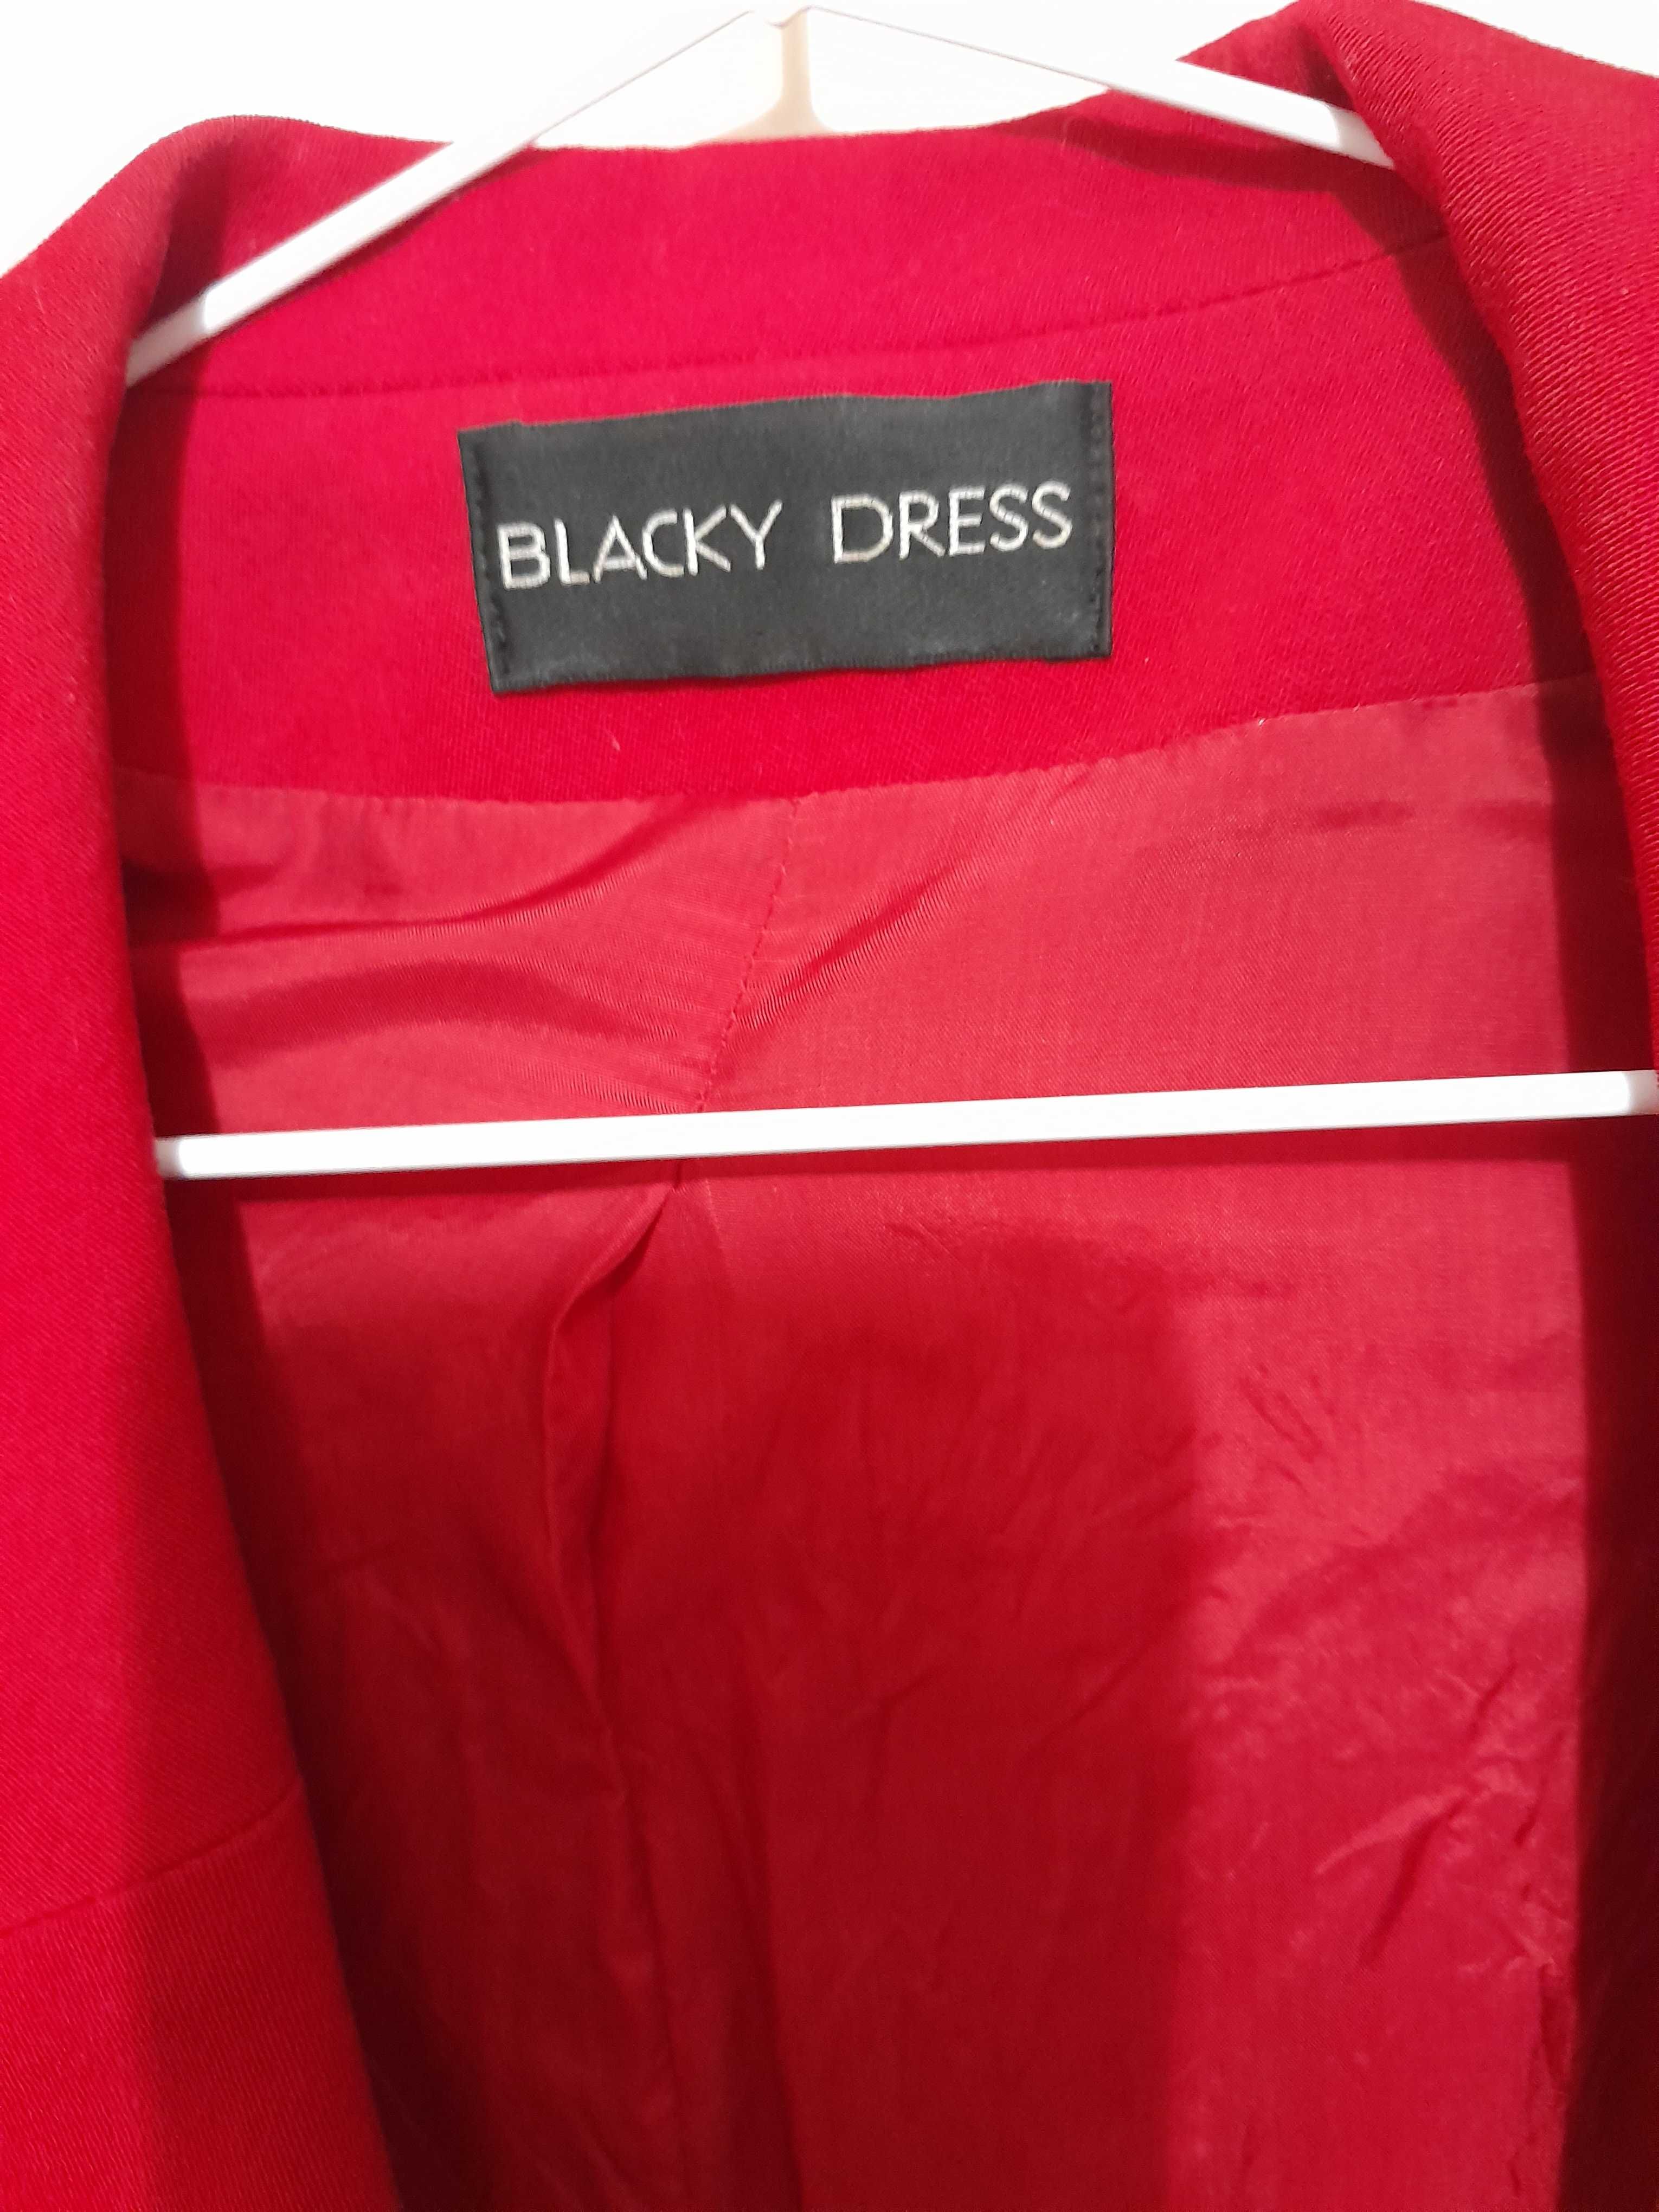 ładna garsonka  Blacky Dress, r. 38